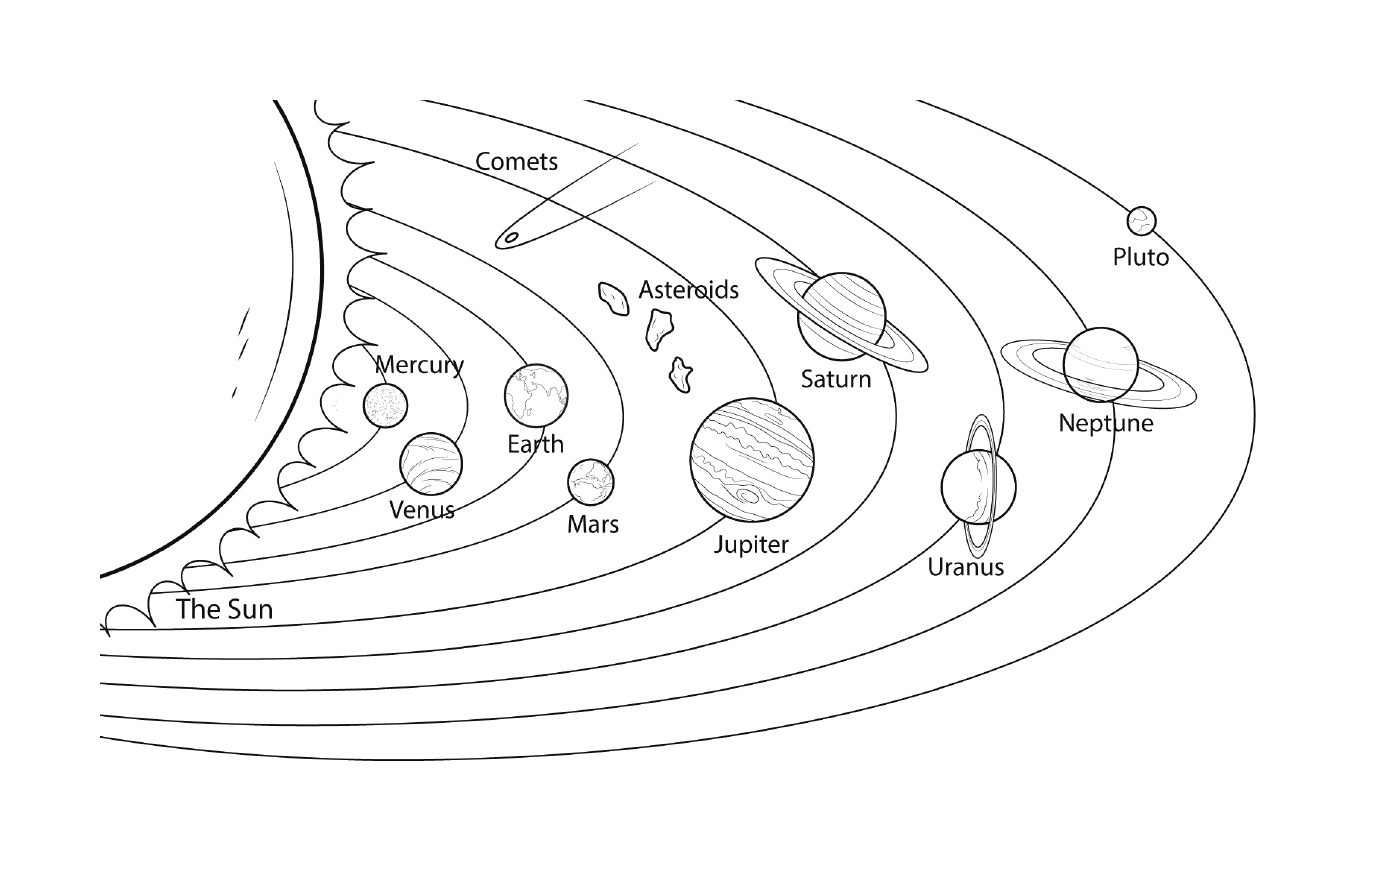 Solar system in model